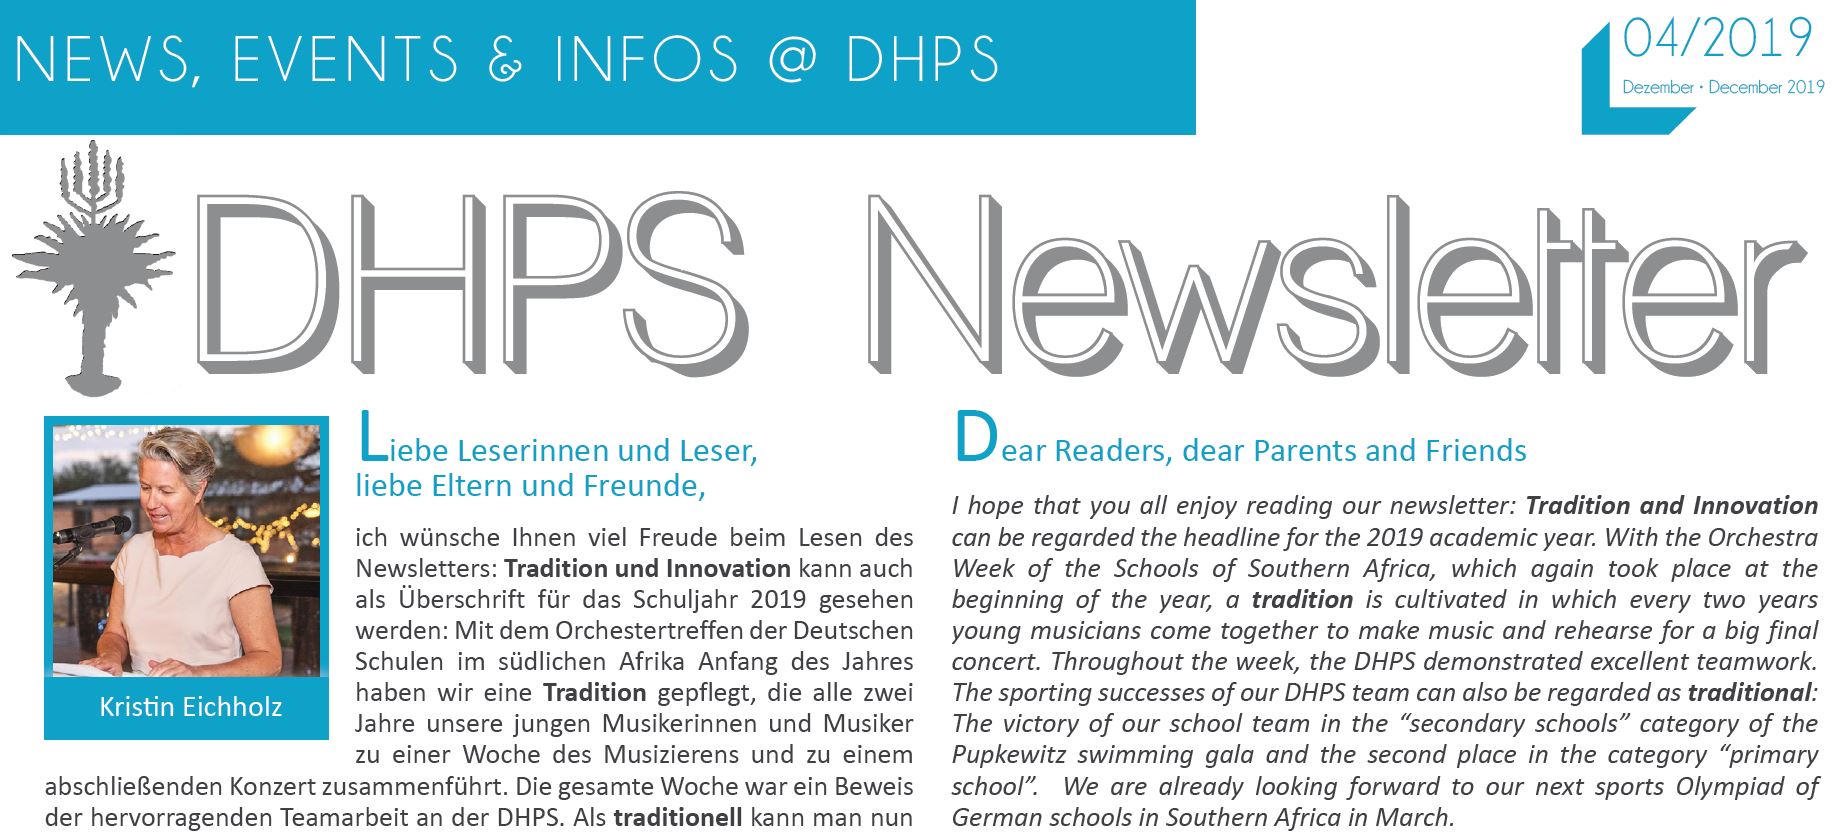 New DHPS Newsletter: December 2019